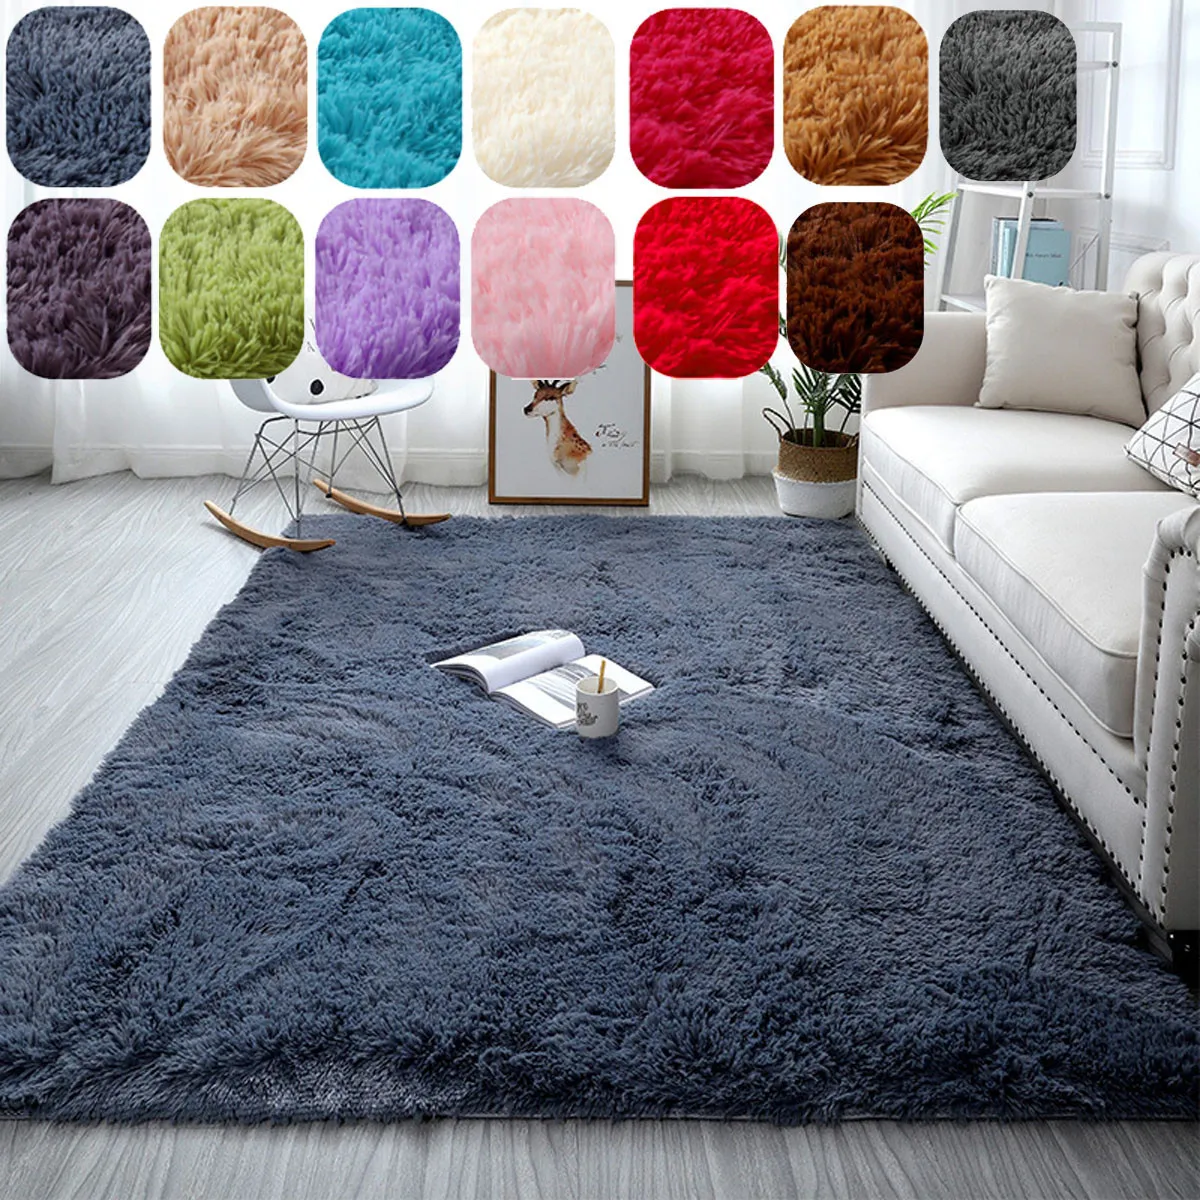 Thick Carpet for Living Room Plush Rug Room Fluffy Floor Carpets Soft Velvet Mat 